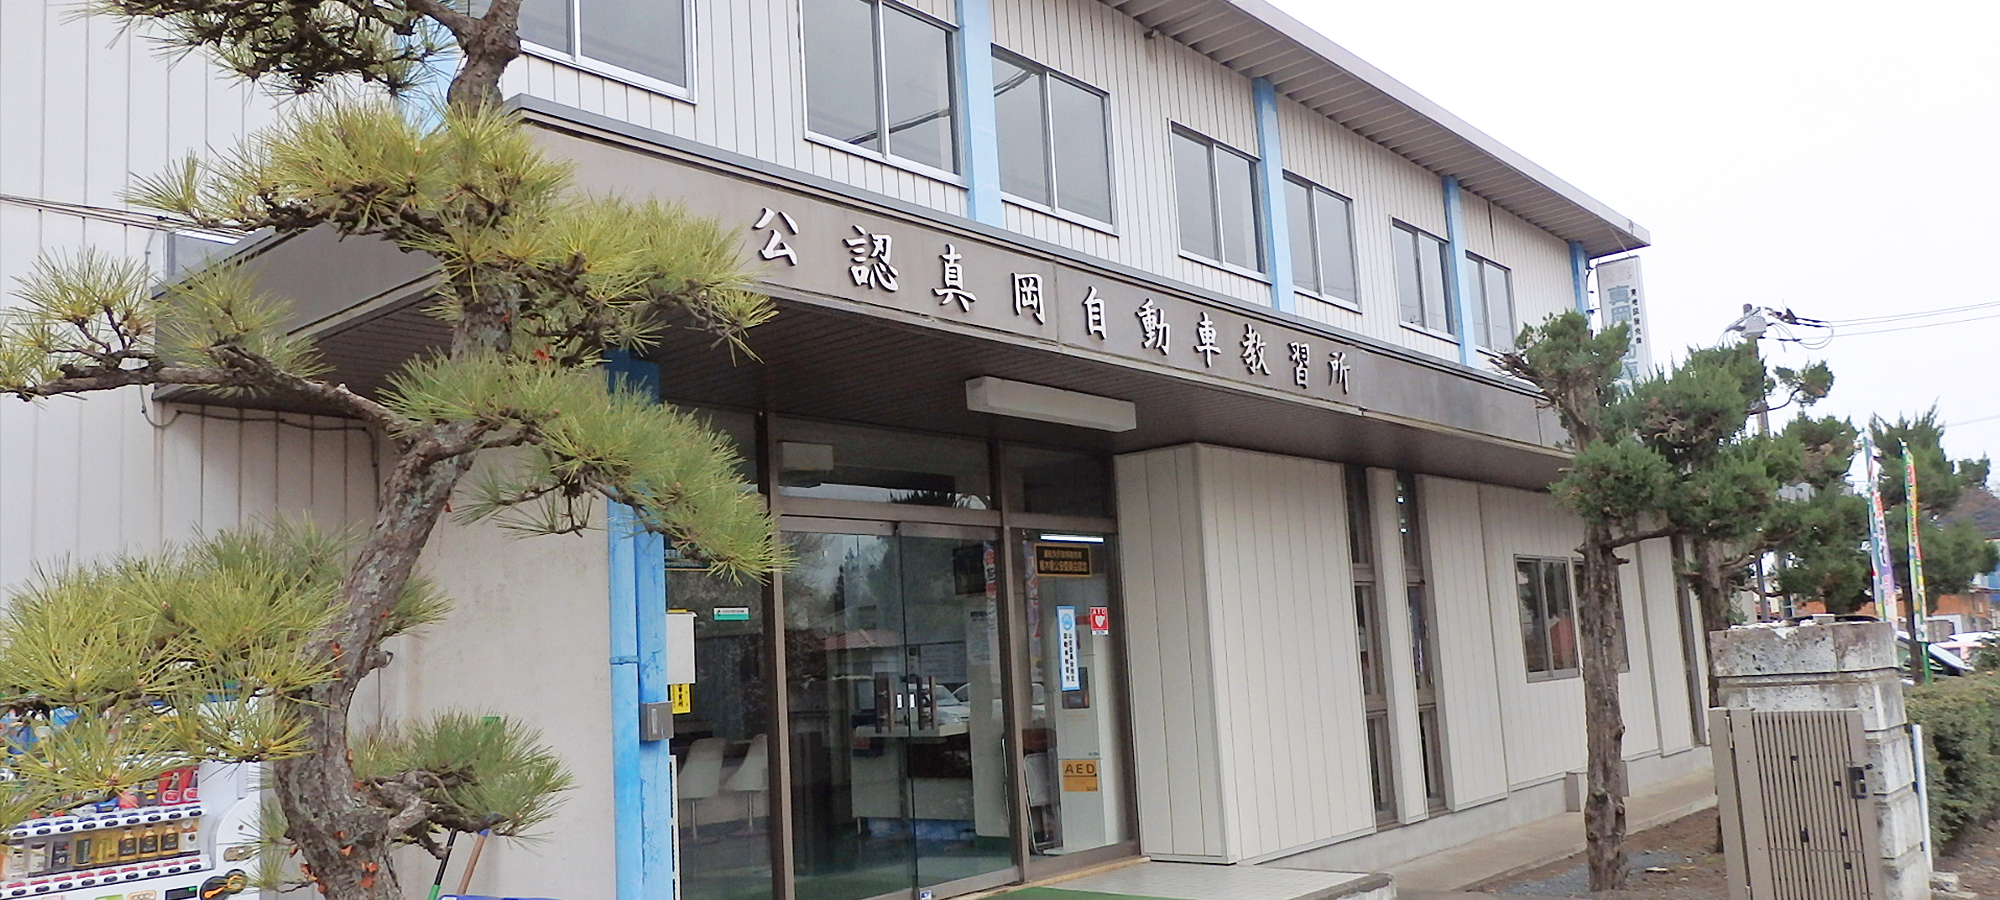 栃木県公安委員会指定の公認真岡自動車教習所